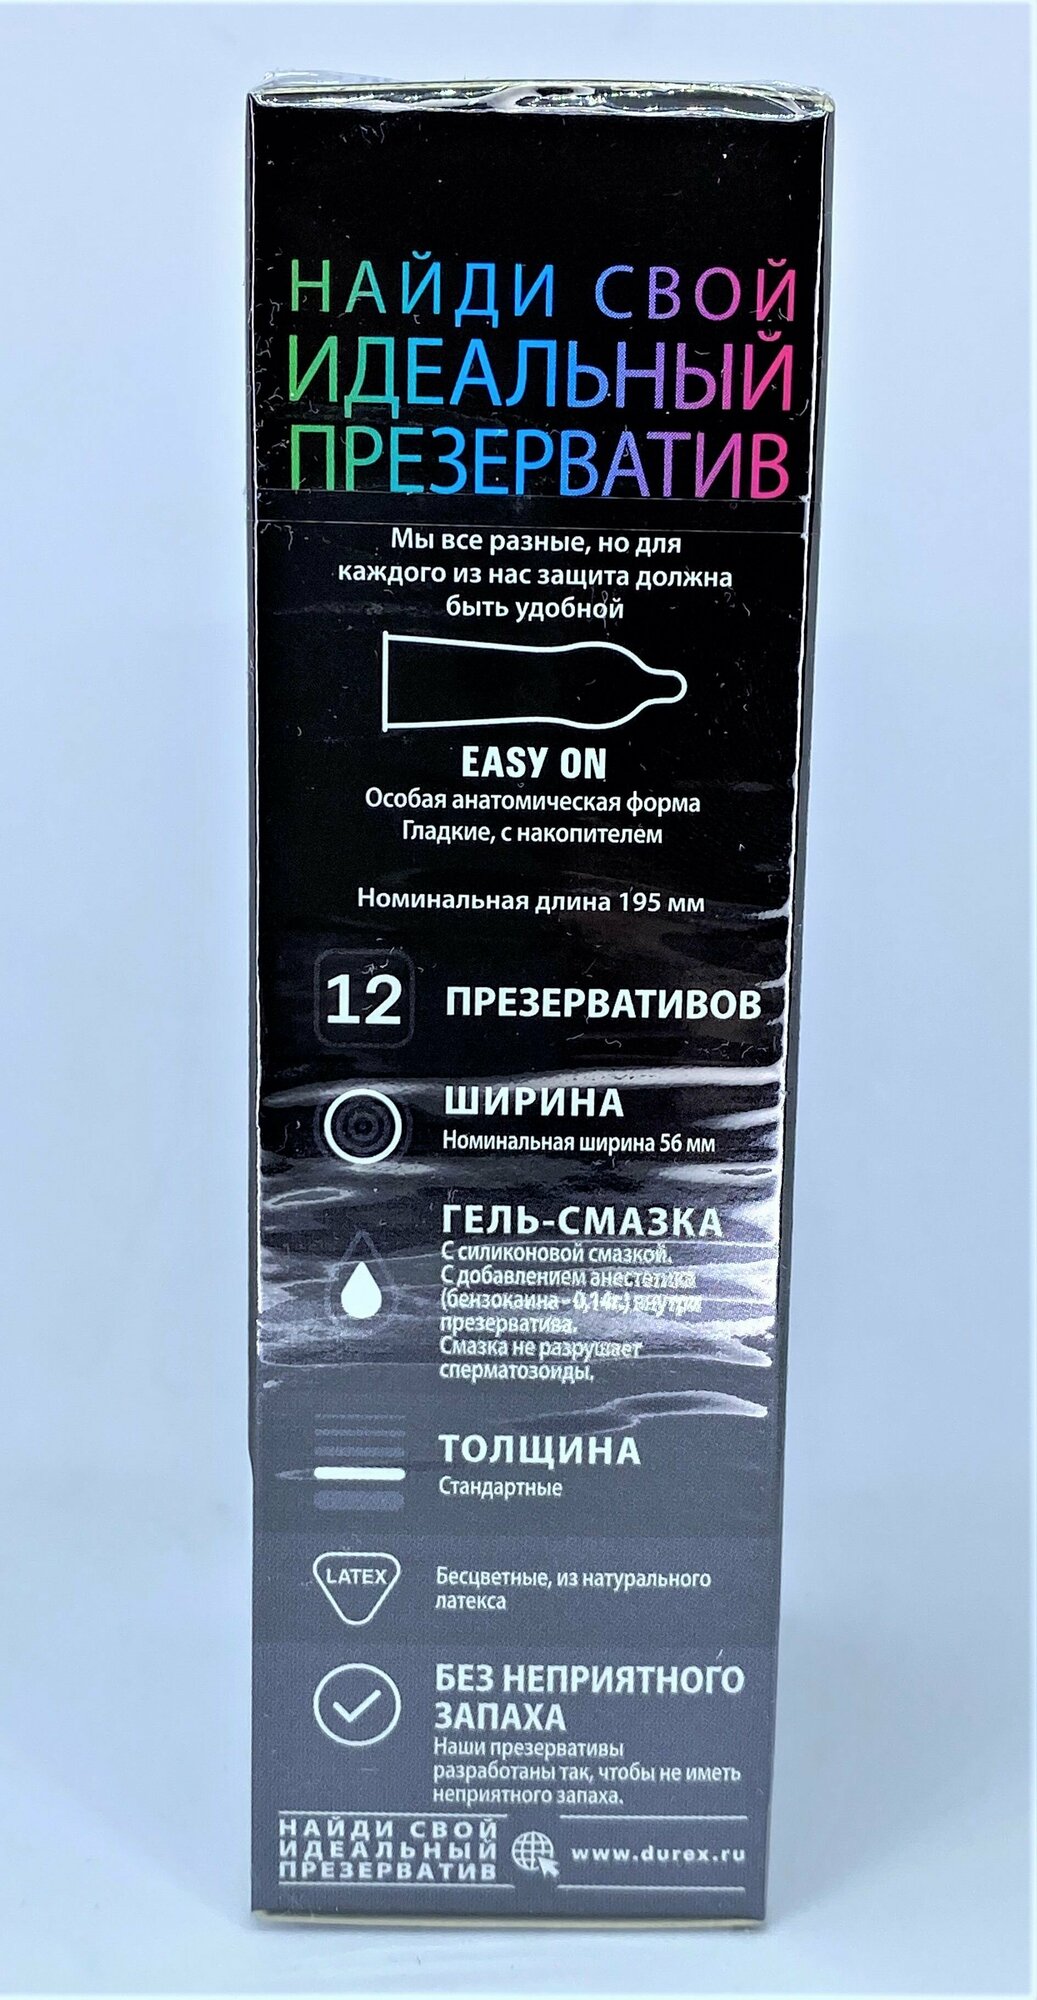 Презервативы Durex (Дюрекс) с анестетиком Infinity гладкие, вариант 2, 12 шт. Рекитт Бенкизер Хелскэар (ЮК) Лтд - фото №11